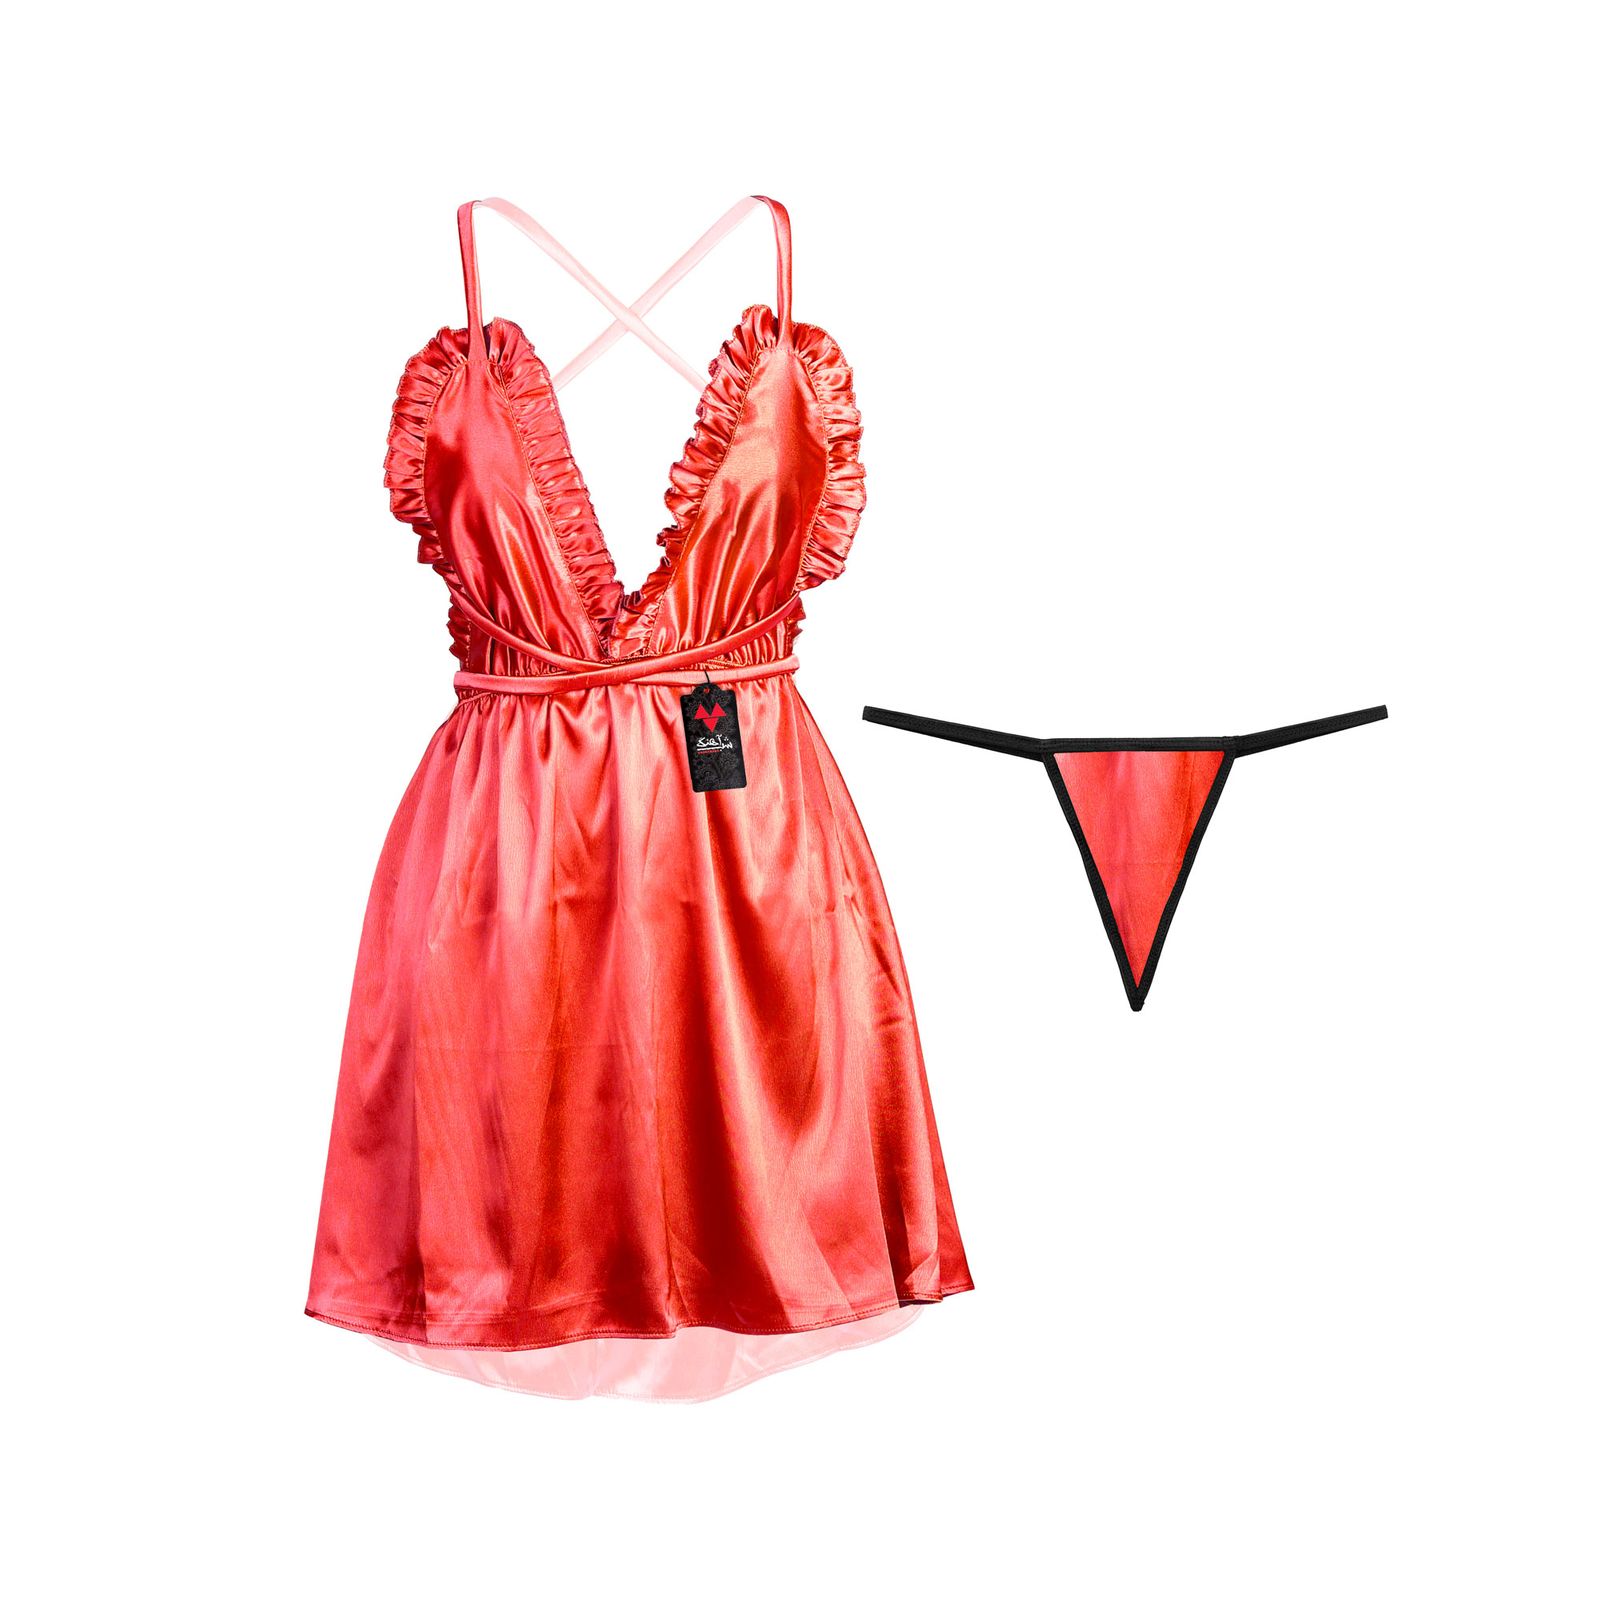 لباس خواب زنانه شباهنگ مدل Miss Lady رنگ قرمز